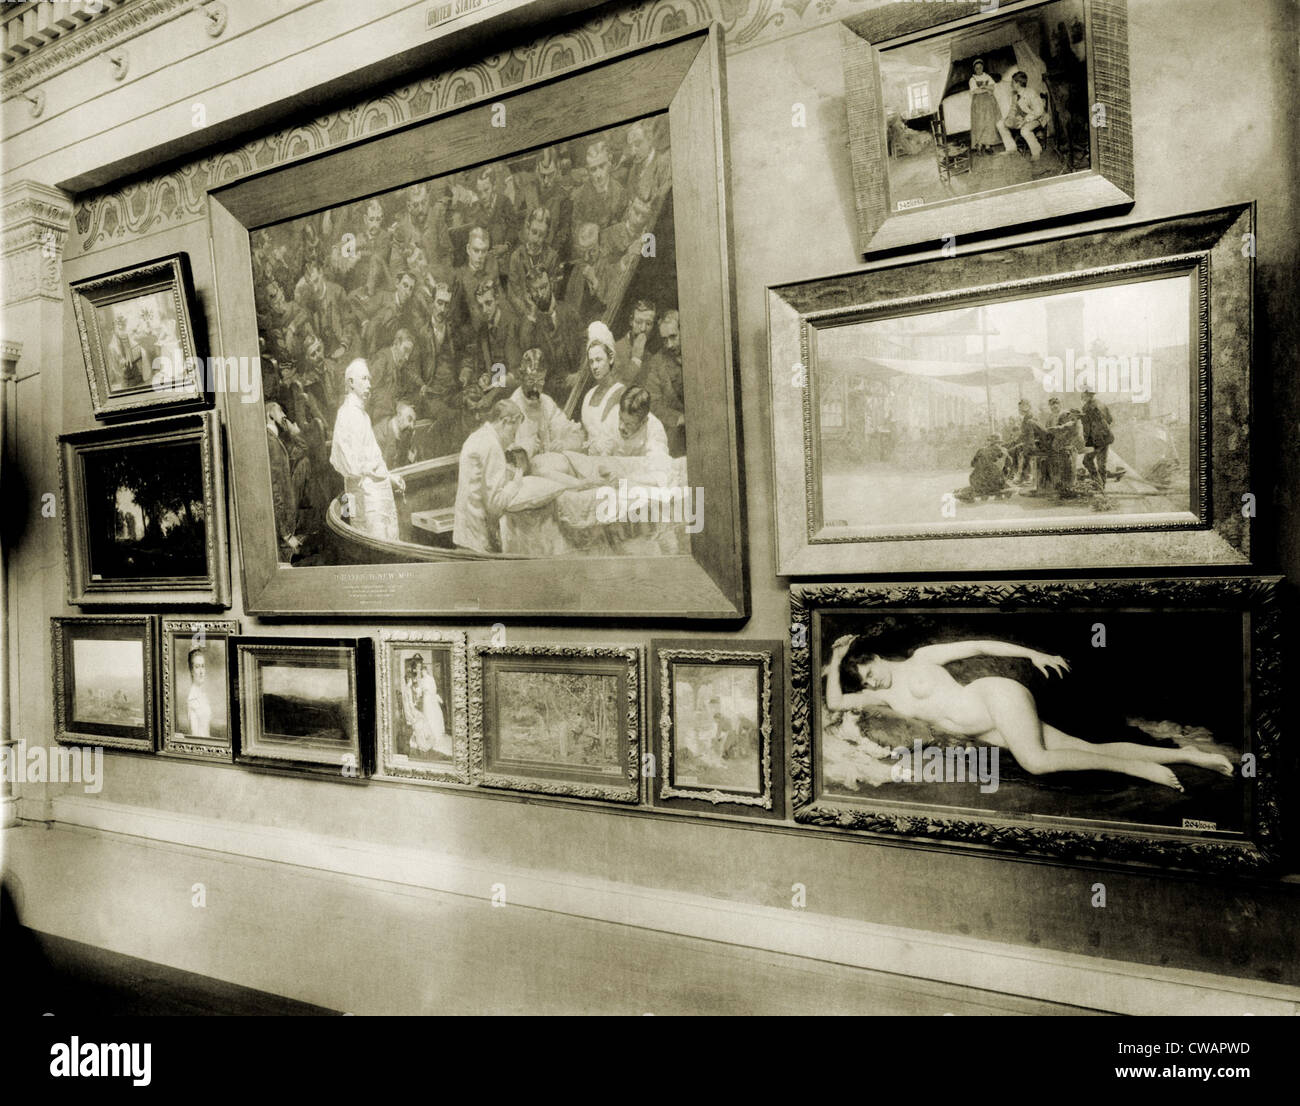 Thomas Eakins monumentalen realistischen Malerei, die Klinik AGNEW (1889) erscheint prominent in der Columbian Exposition 1893, Stockfoto